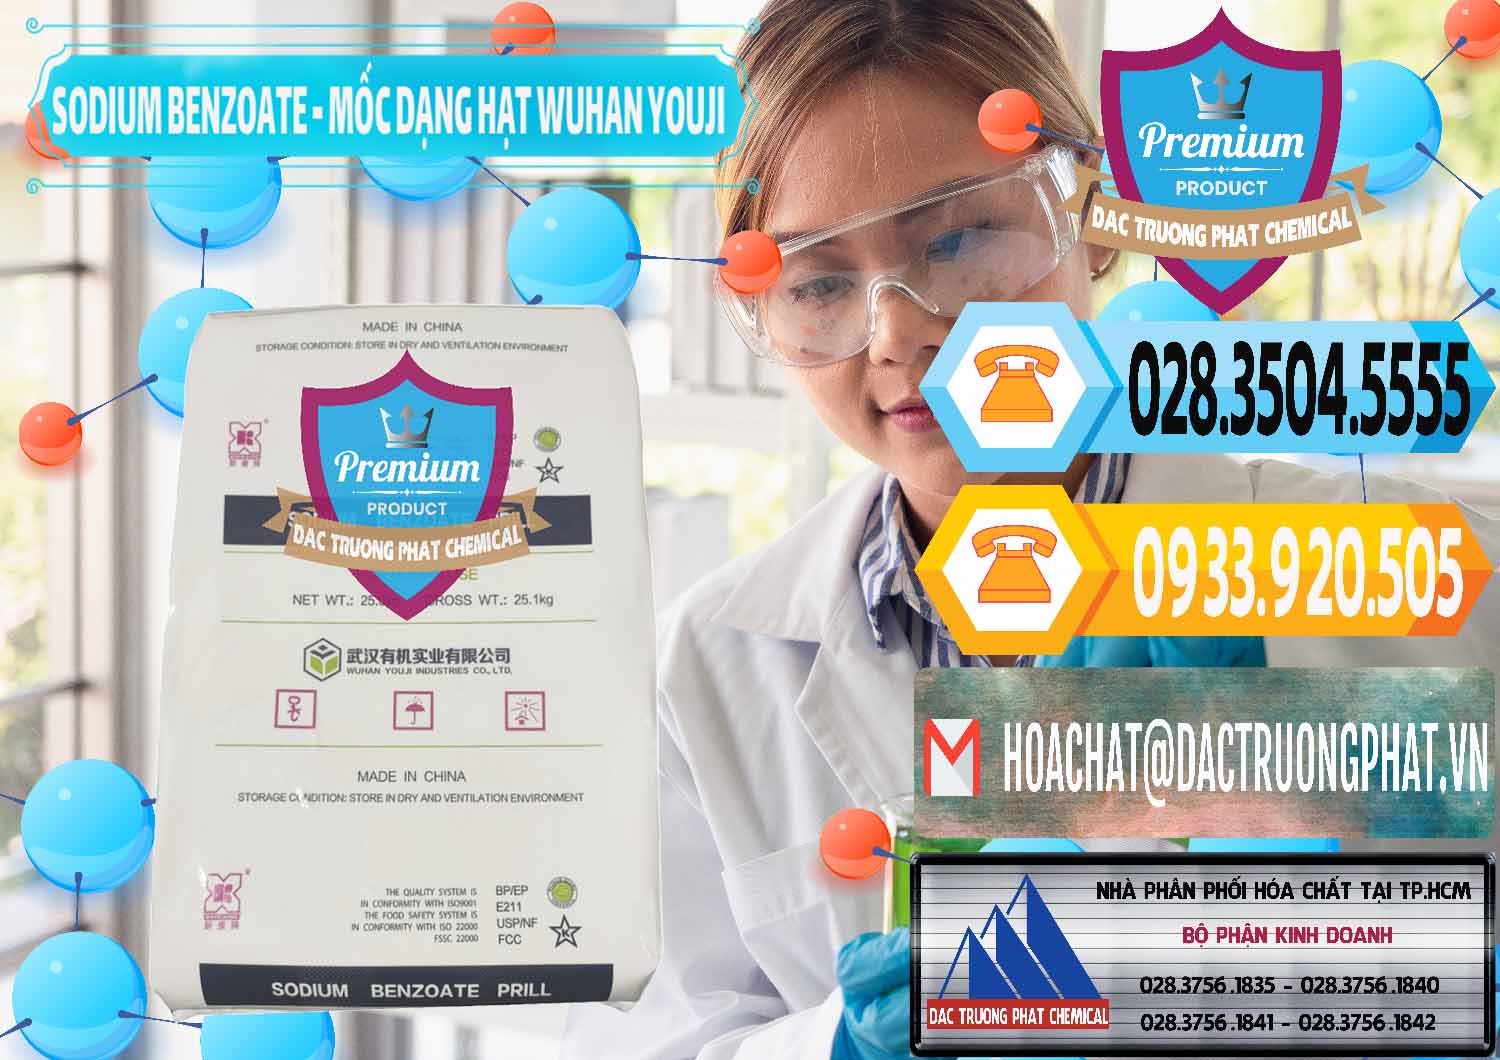 Cty chuyên bán ( phân phối ) Sodium Benzoate - Mốc Dạng Hạt Food Grade Wuhan Youji Trung Quốc China - 0276 - Công ty chuyên bán ( phân phối ) hóa chất tại TP.HCM - hoachattayrua.net